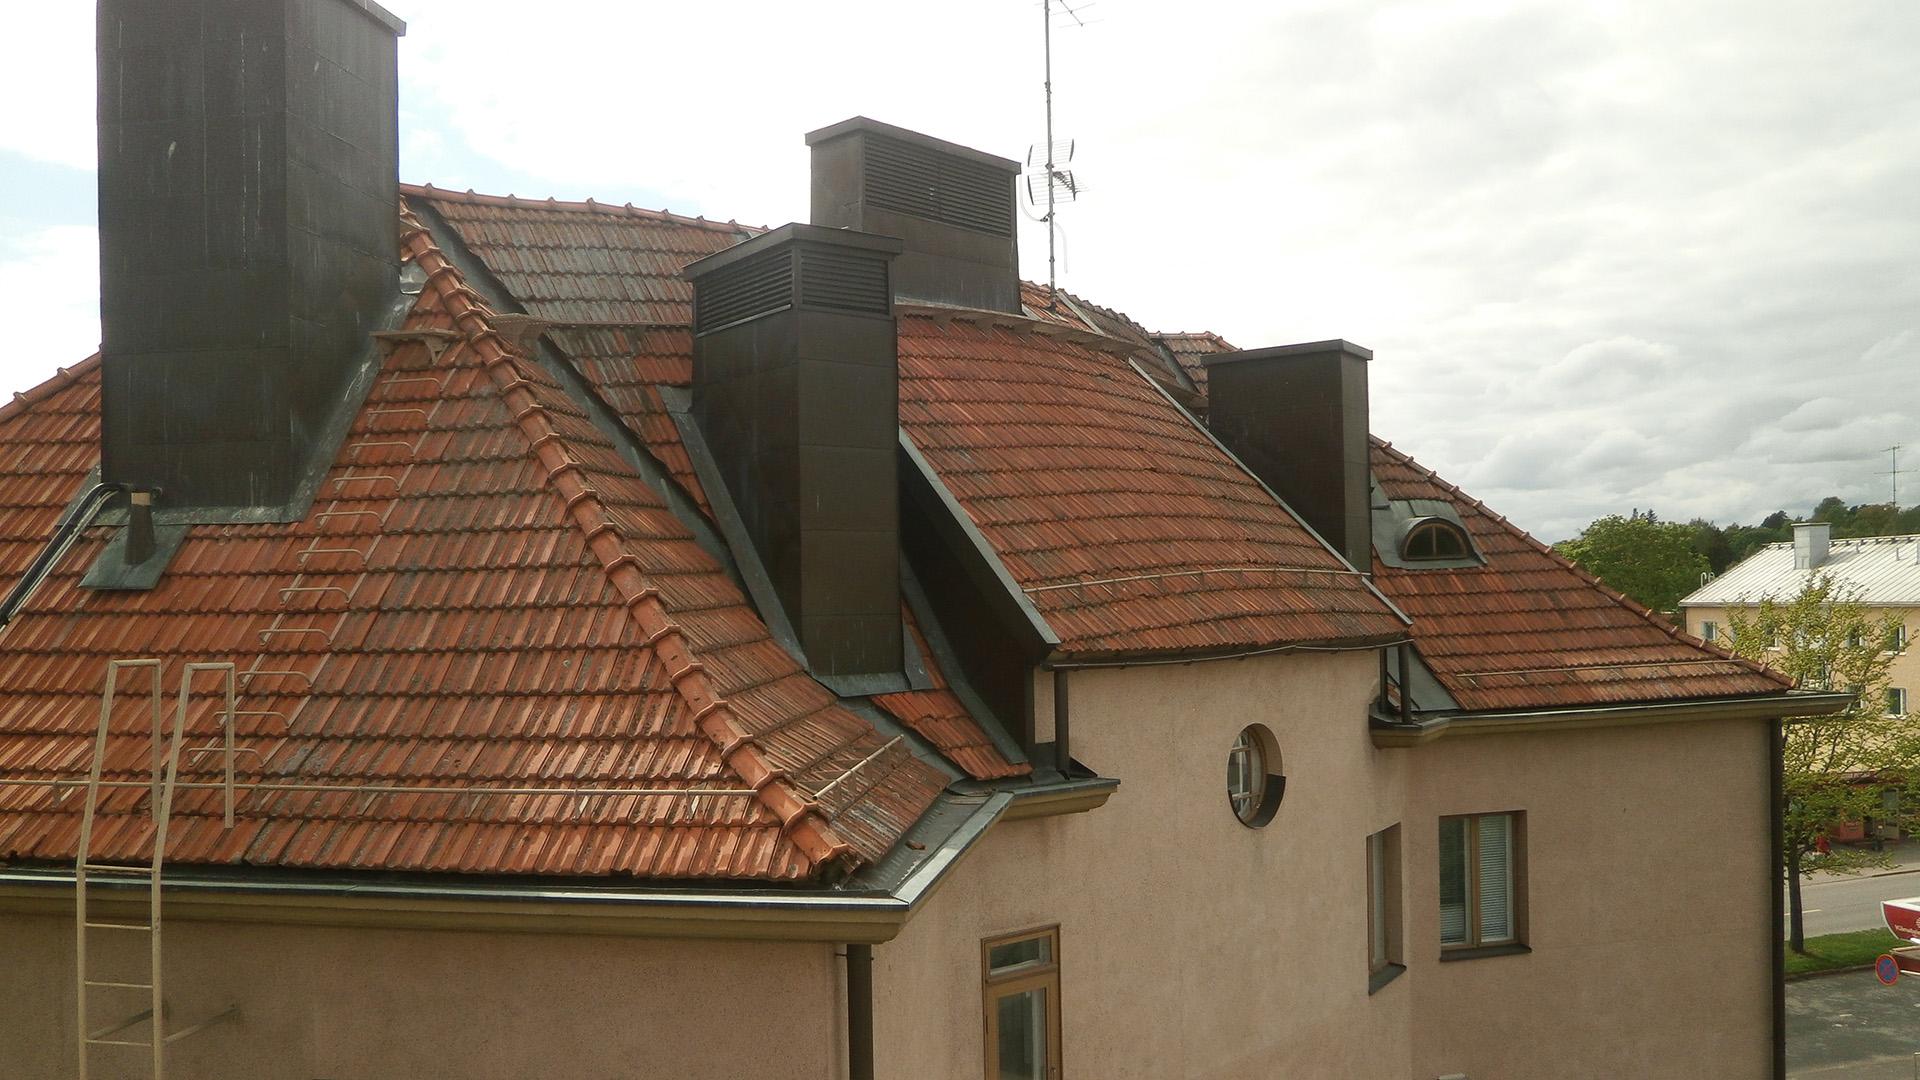 Vanhan katon tiilet olivat jo osittain vaurioituneet ja katon alusrakenteet kaipasivat uusimista.